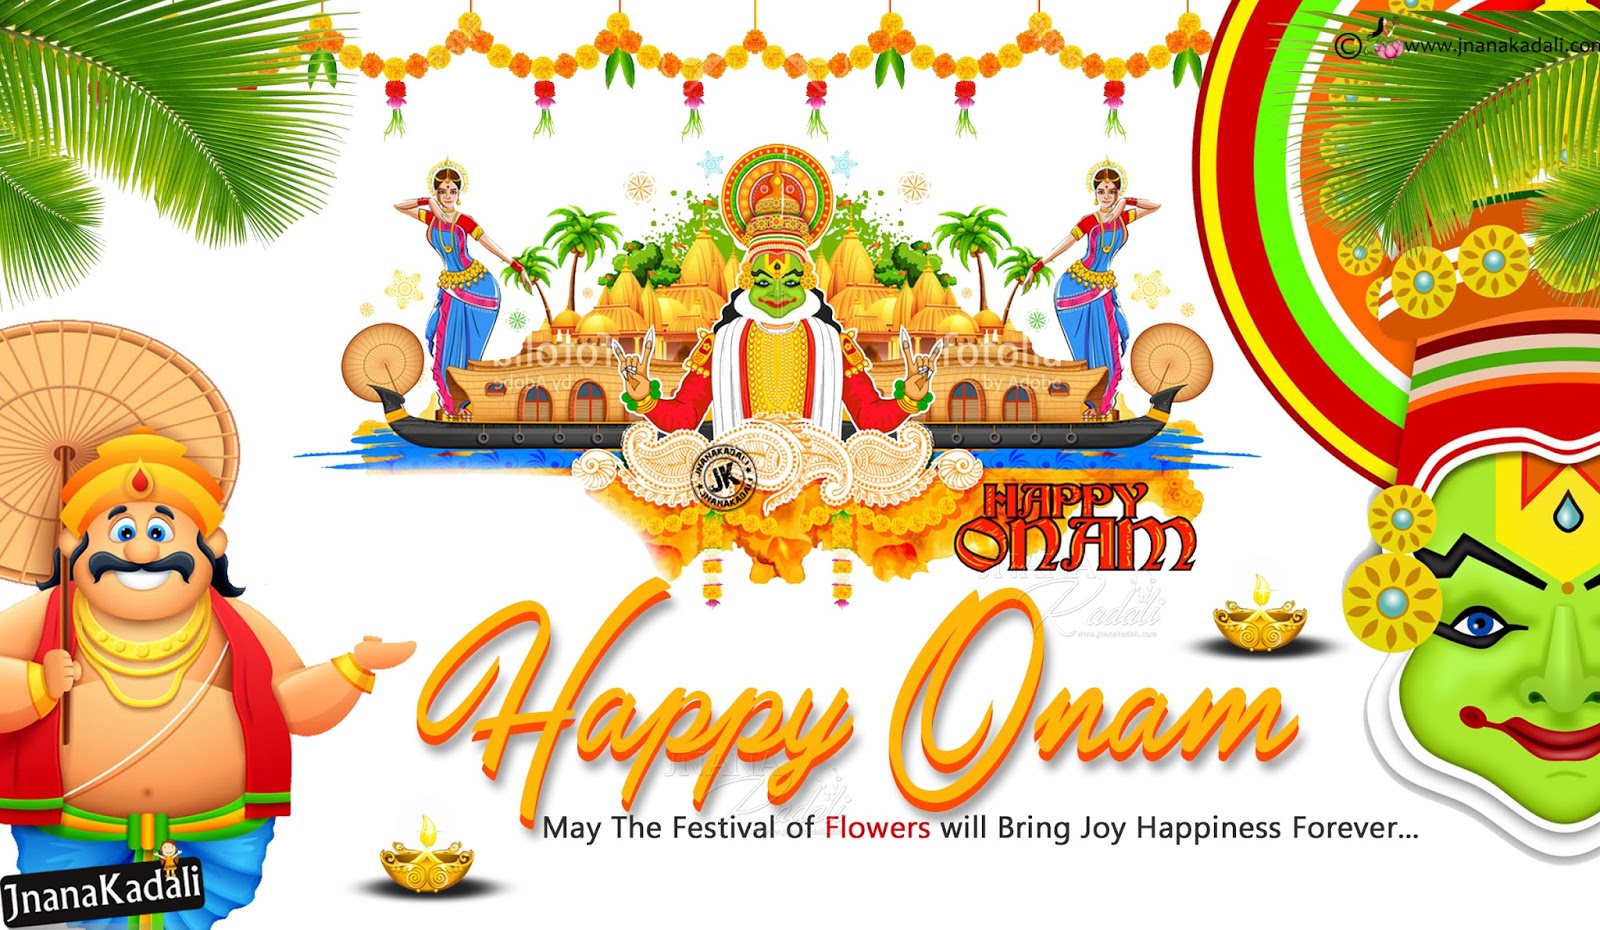 Happy Onam Greetings Wallpapers, Best Onam Greetings - Onam Wallpapers Free Download - HD Wallpaper 